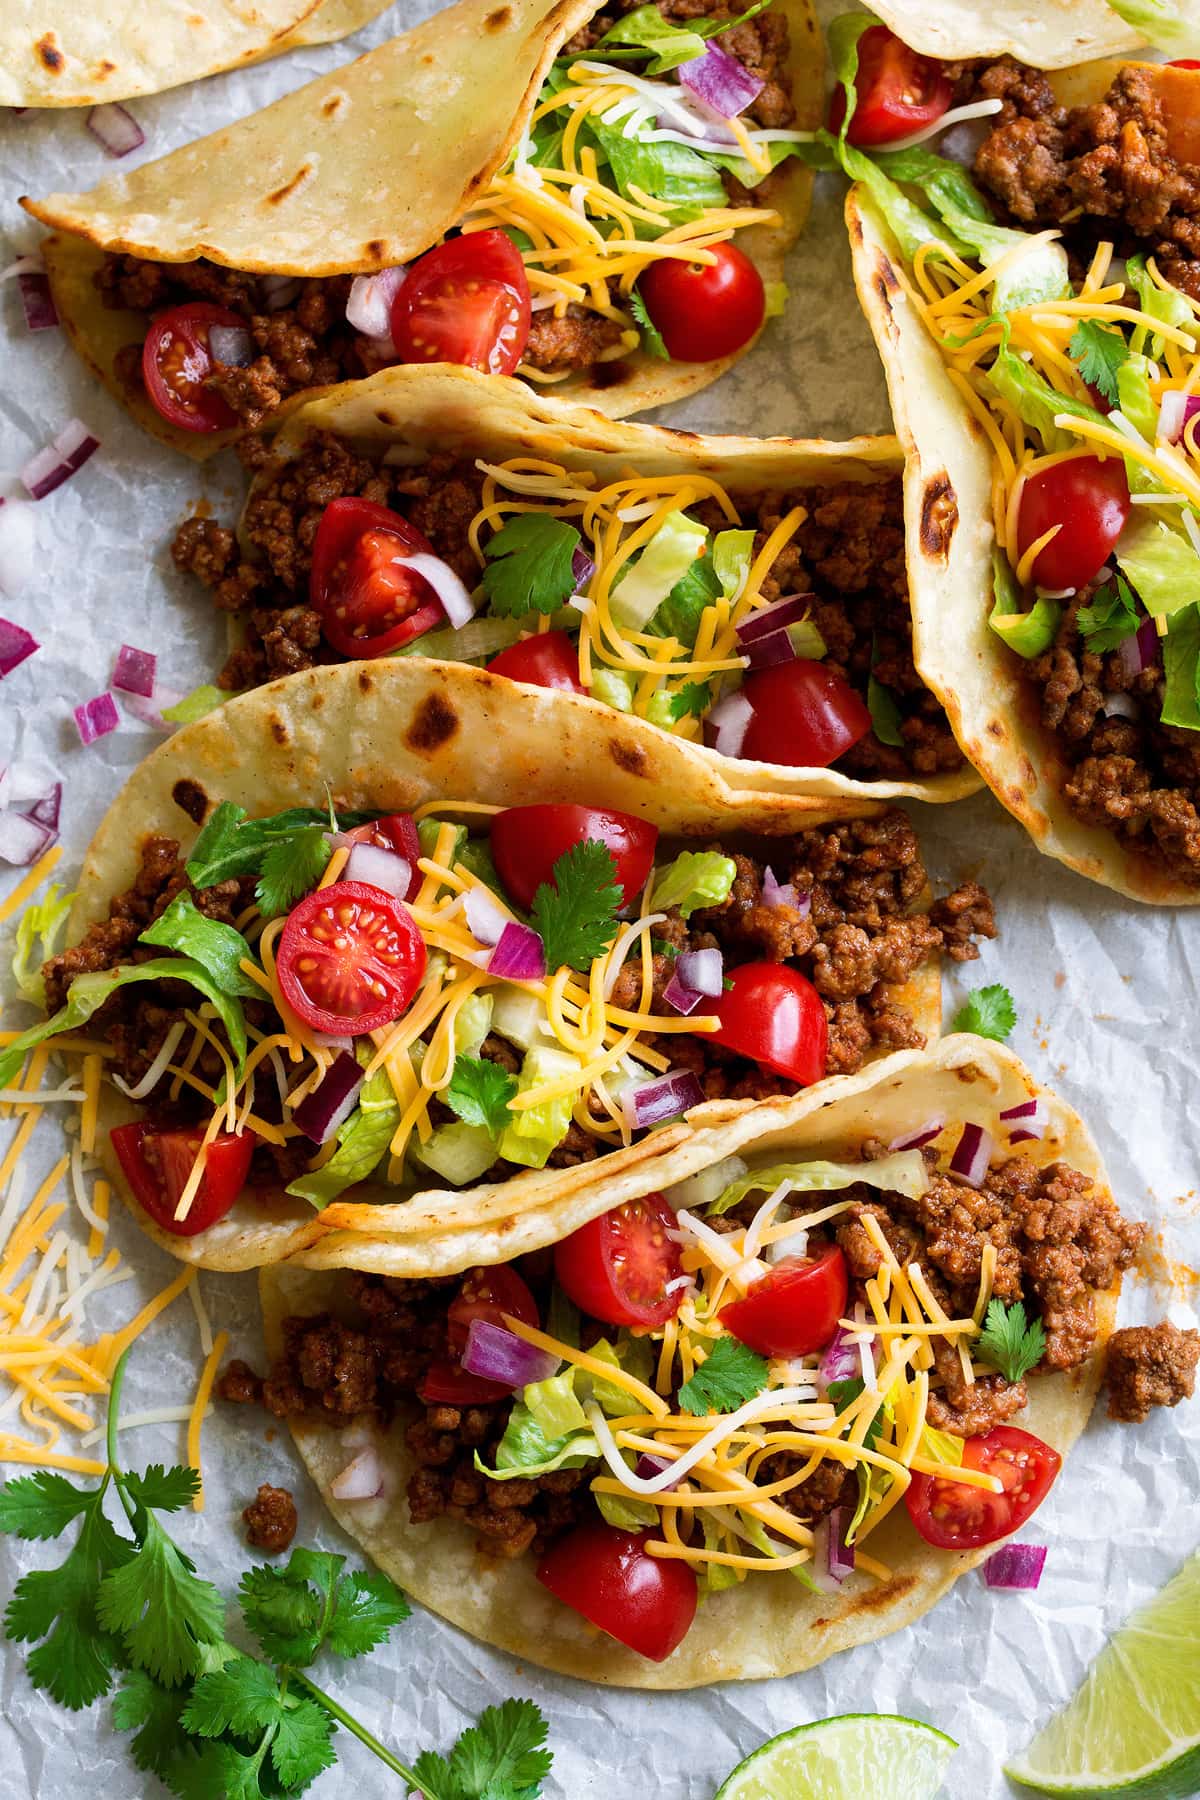 Tacos là một món ăn truyền thống trong nền ẩm thực Mexico